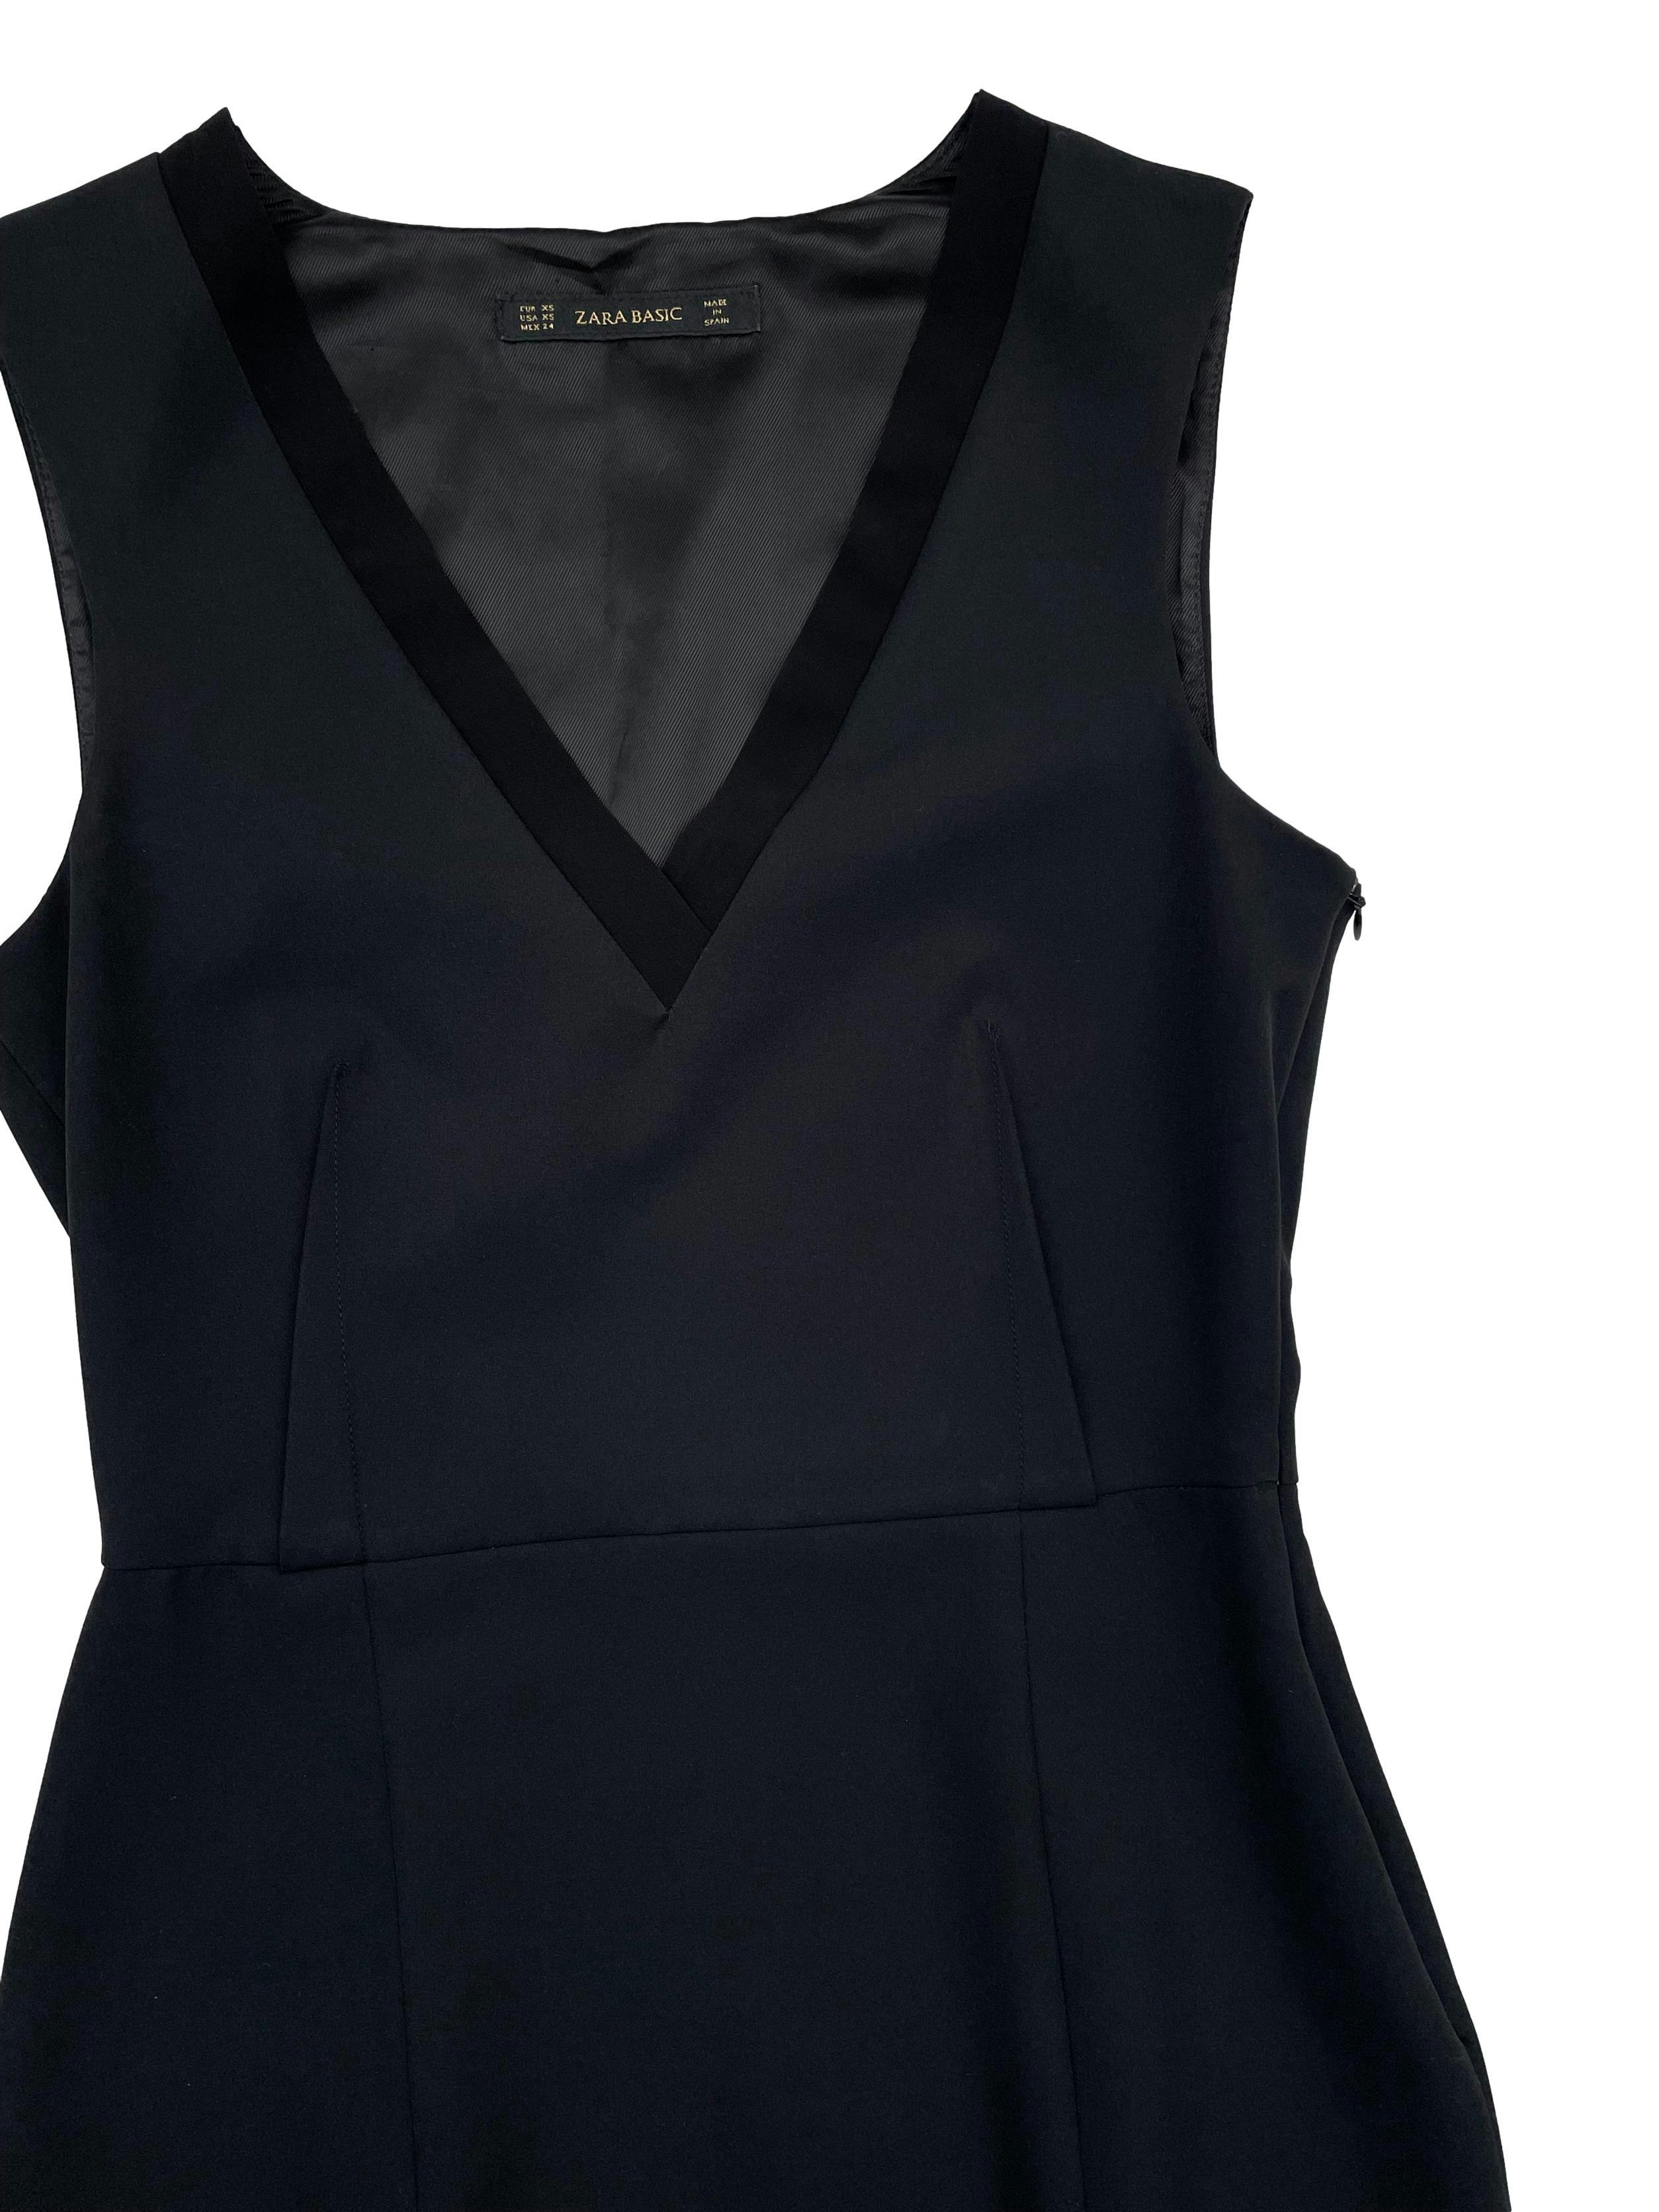 Vestido Zara negro entallado de tela plana con forro,escote en V y cierre invisible lateral. Busto 82cm, Largo 95cm.